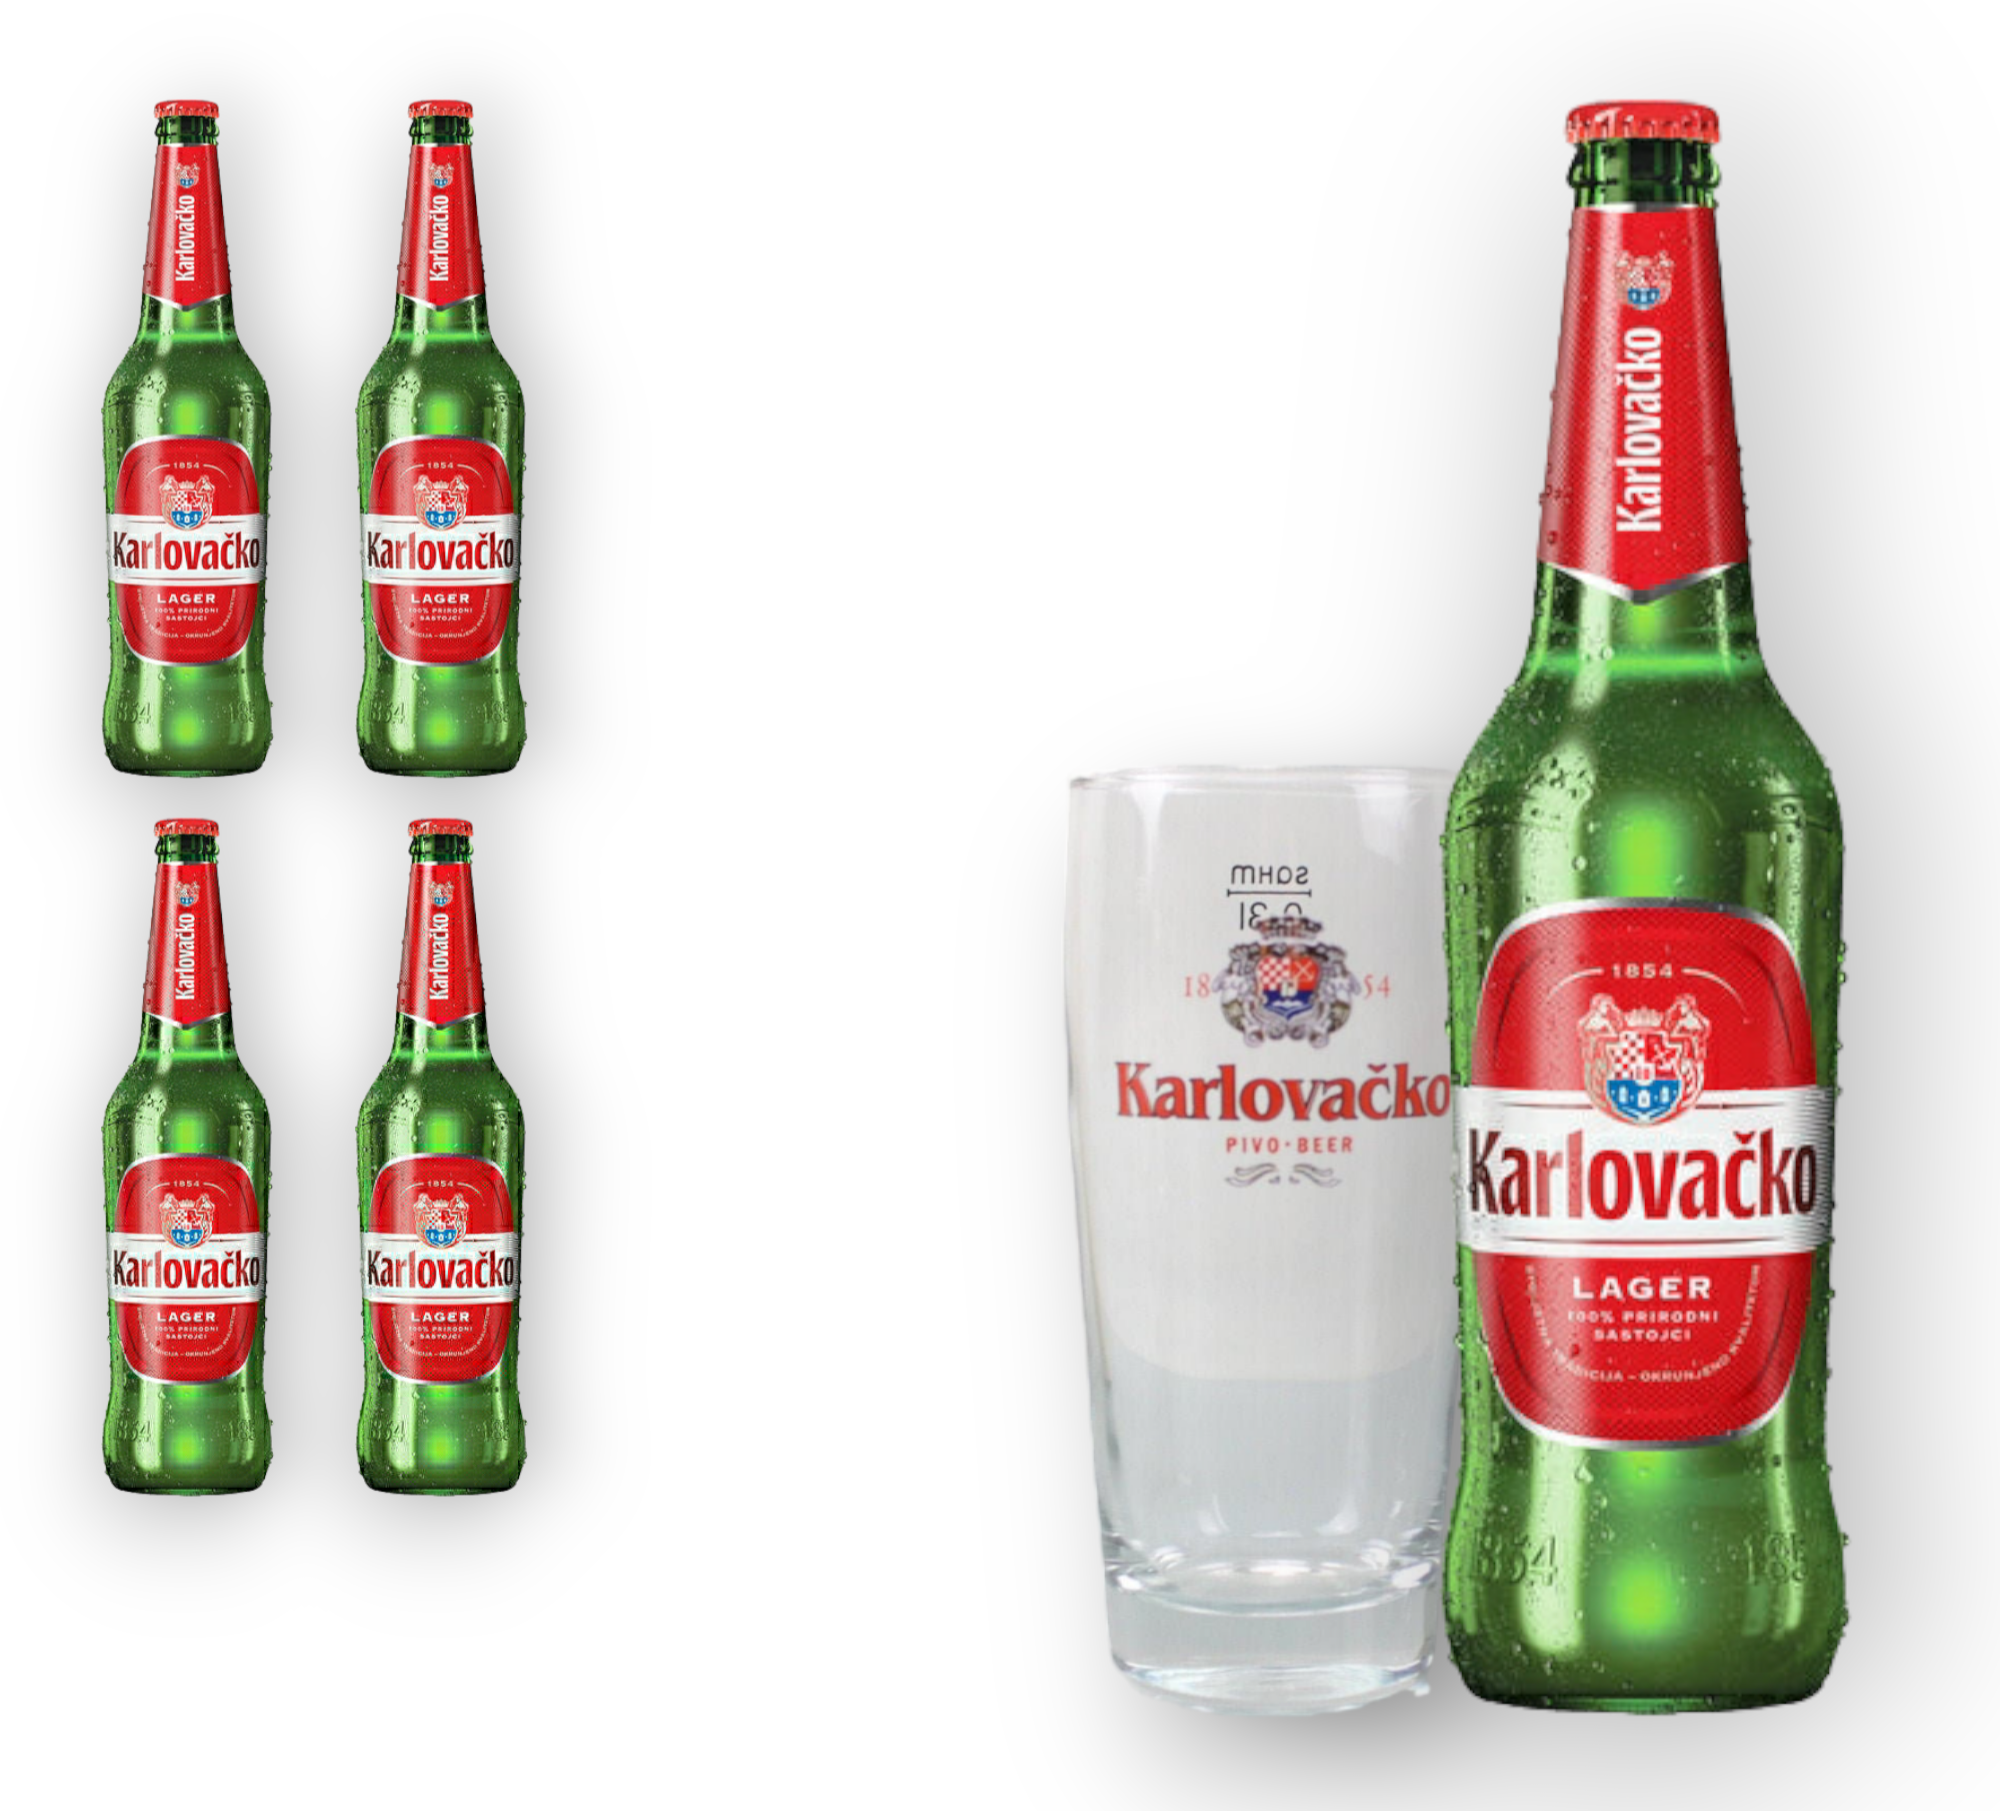 Karlovacko kroatisches Bier mit 5,4% Vol. - Brauerei "Karlovacka Pivovara" 0,33l